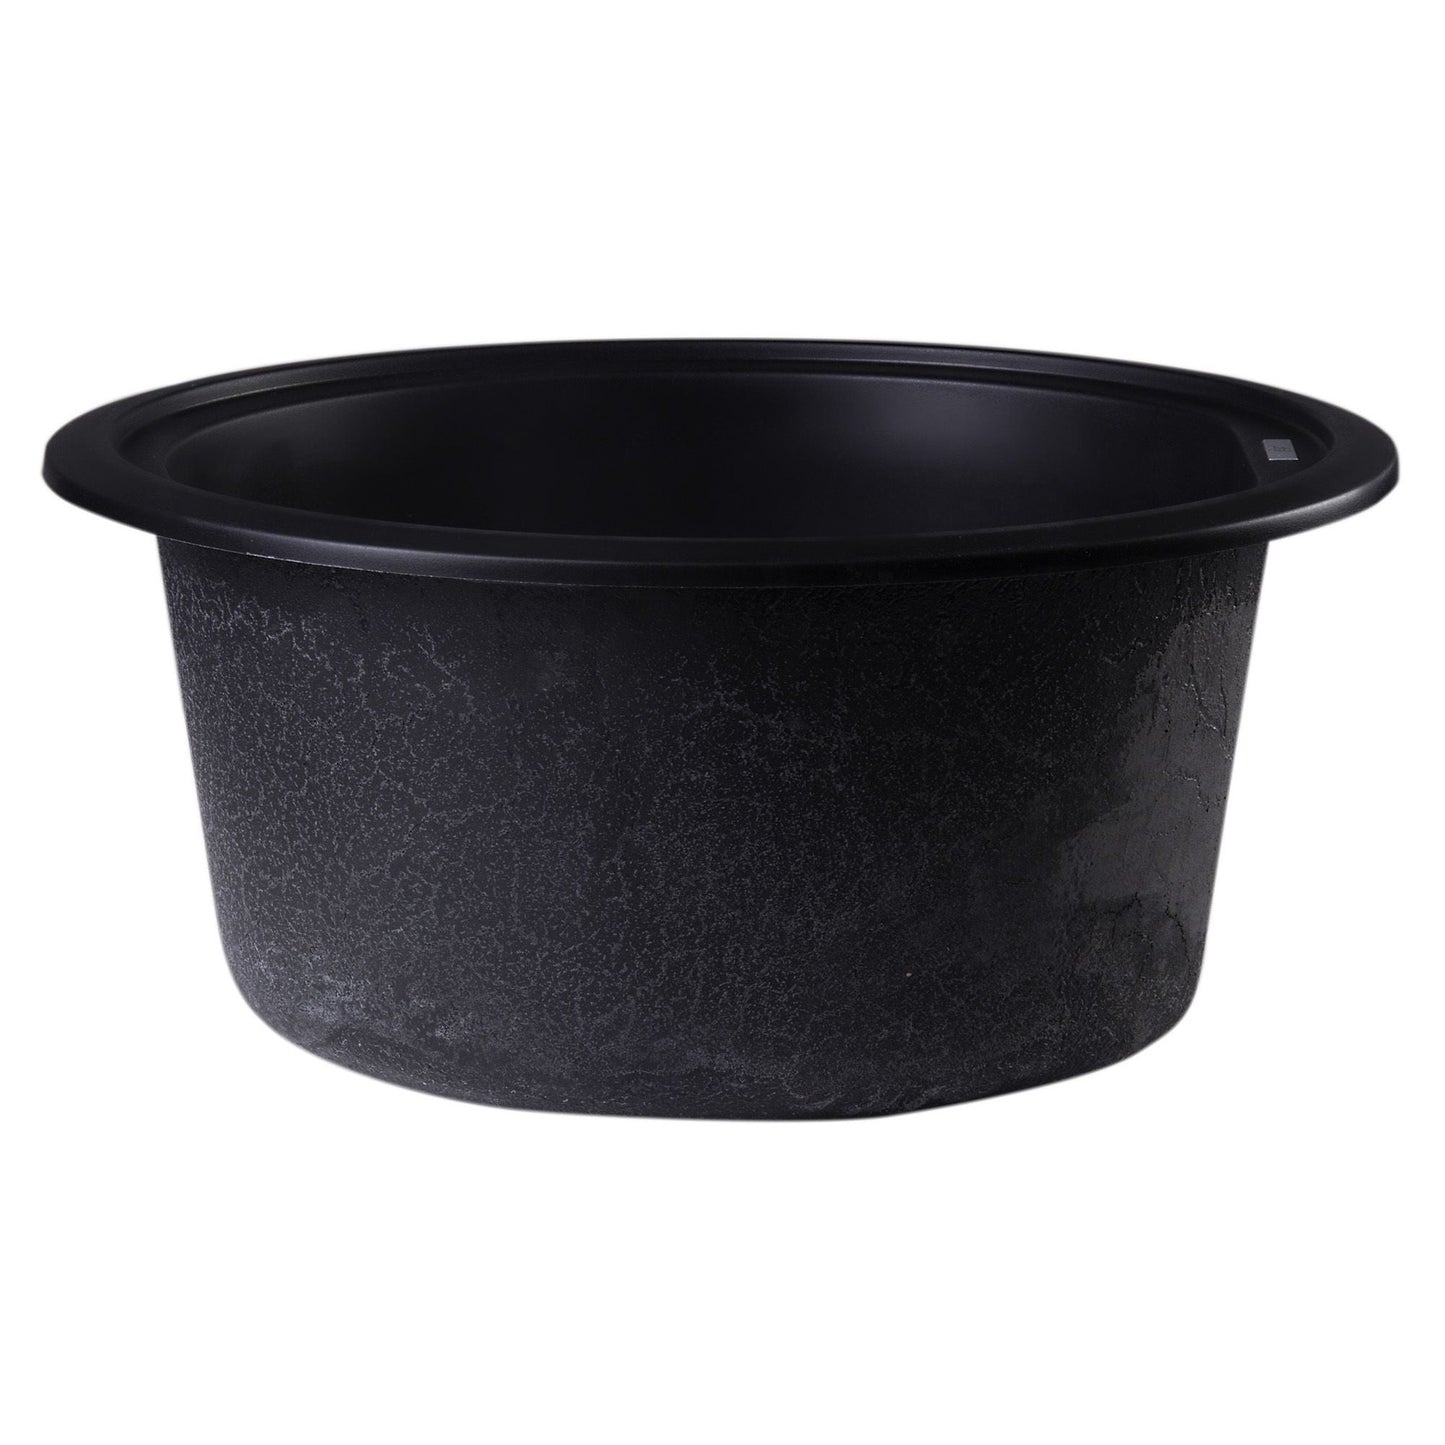 ALFI Brand AB1717DI-BLA Black 17" Drop-In Round Granite Composite Kitchen Prep Sink